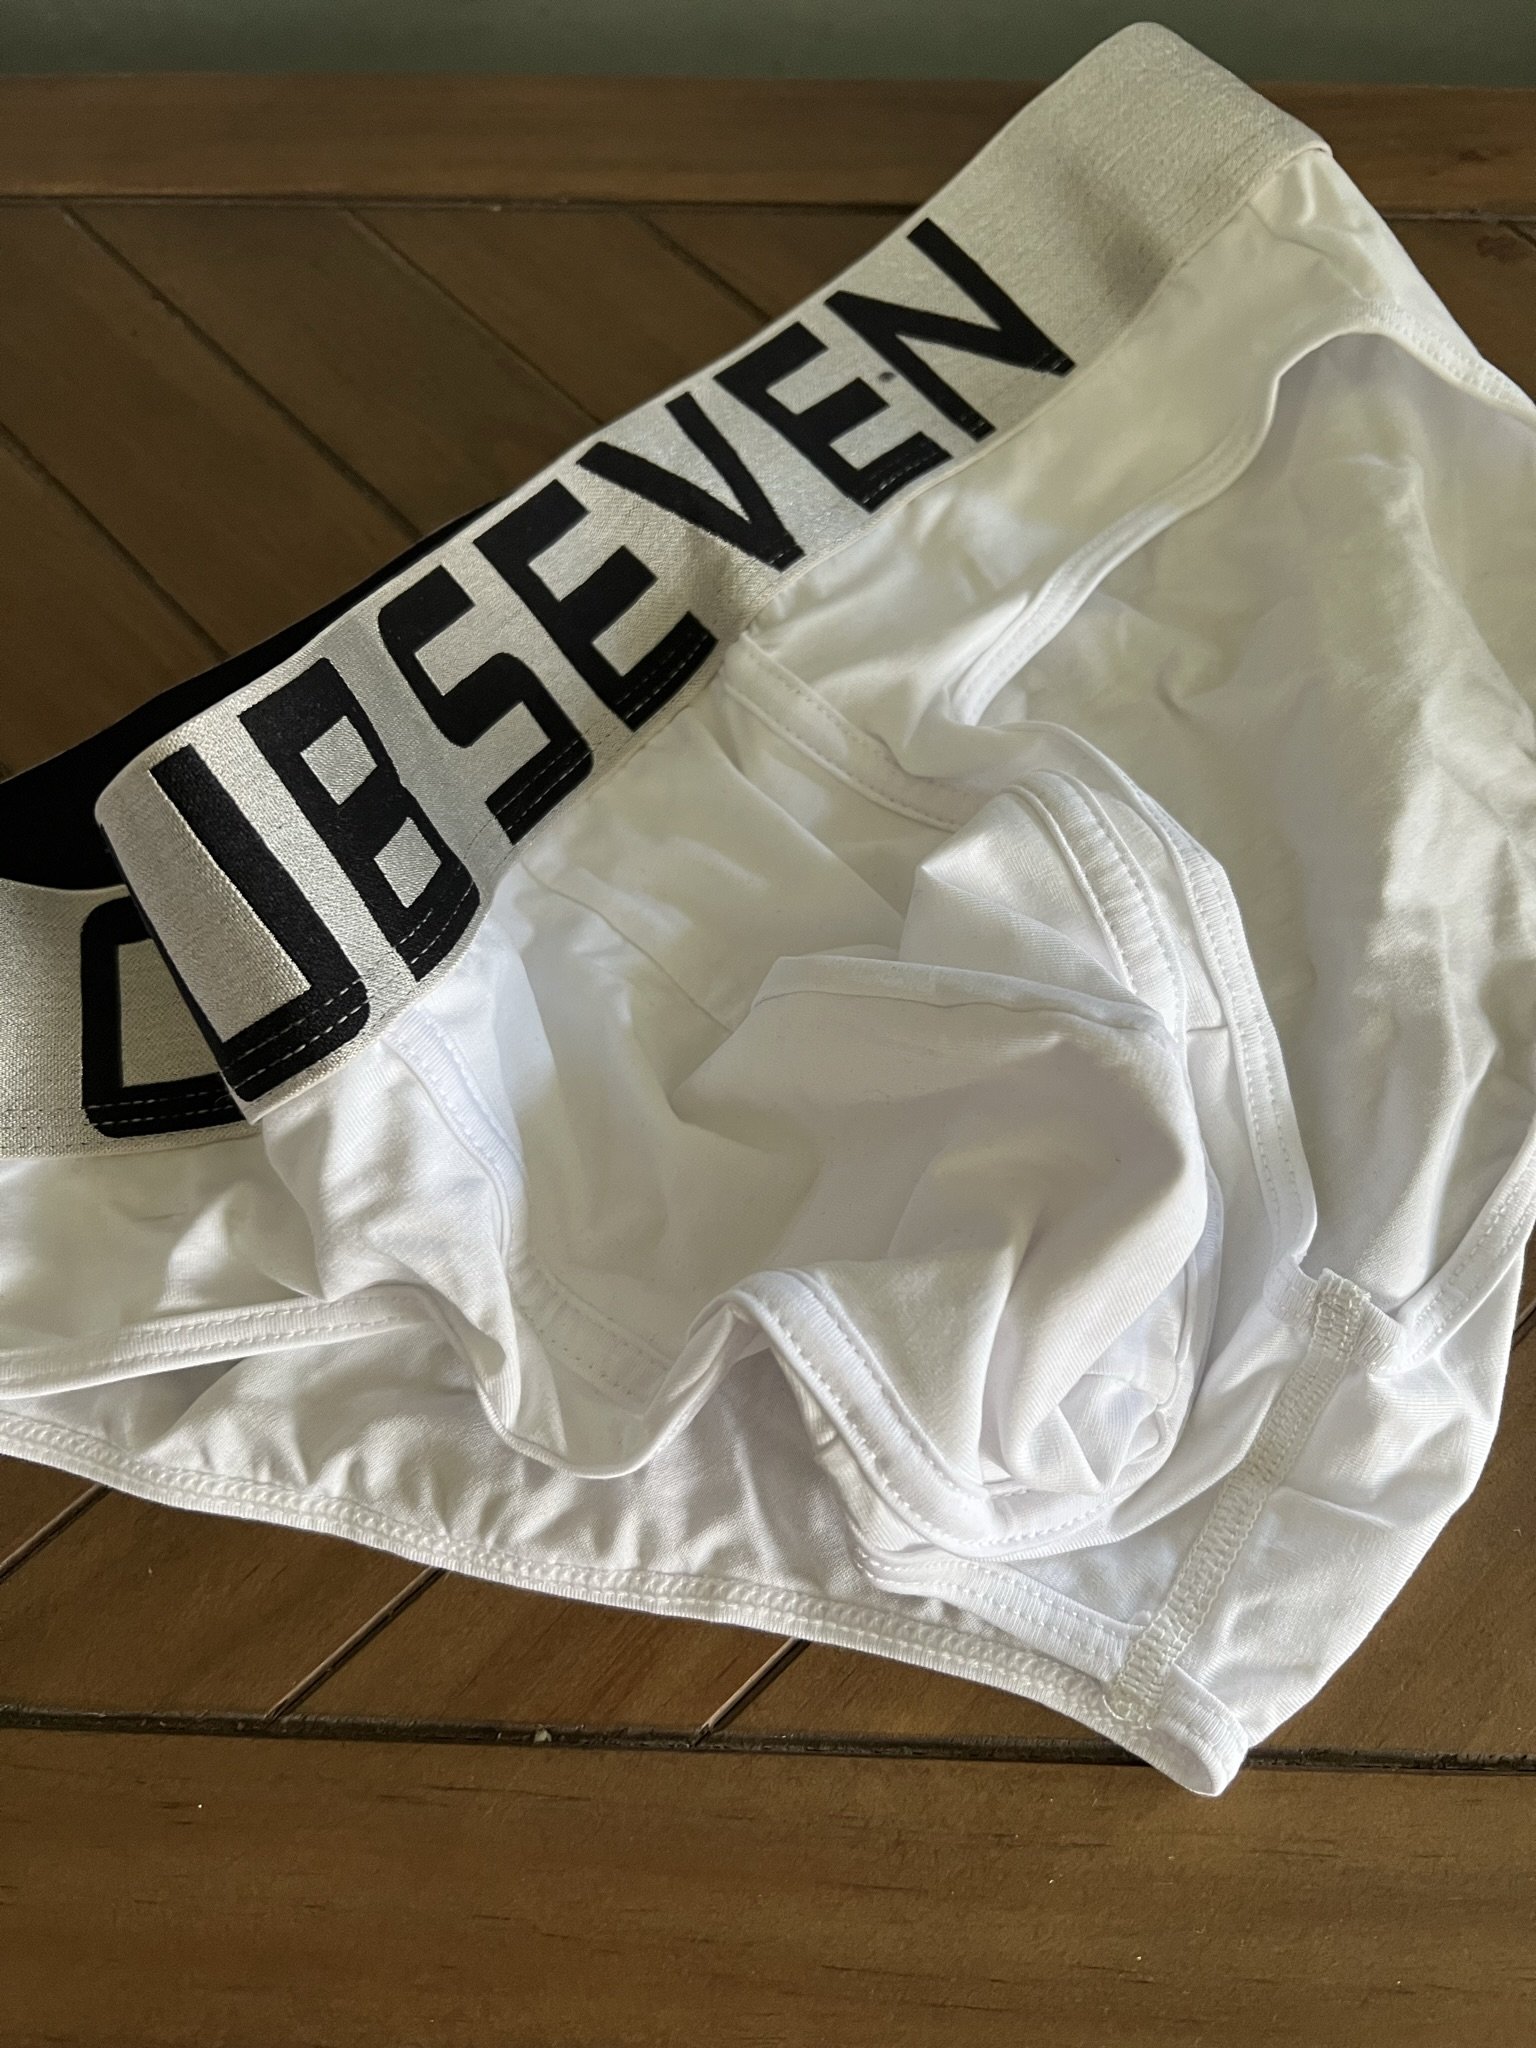 Club Seven Menswear - Luxury Man's Underwear & Menswear